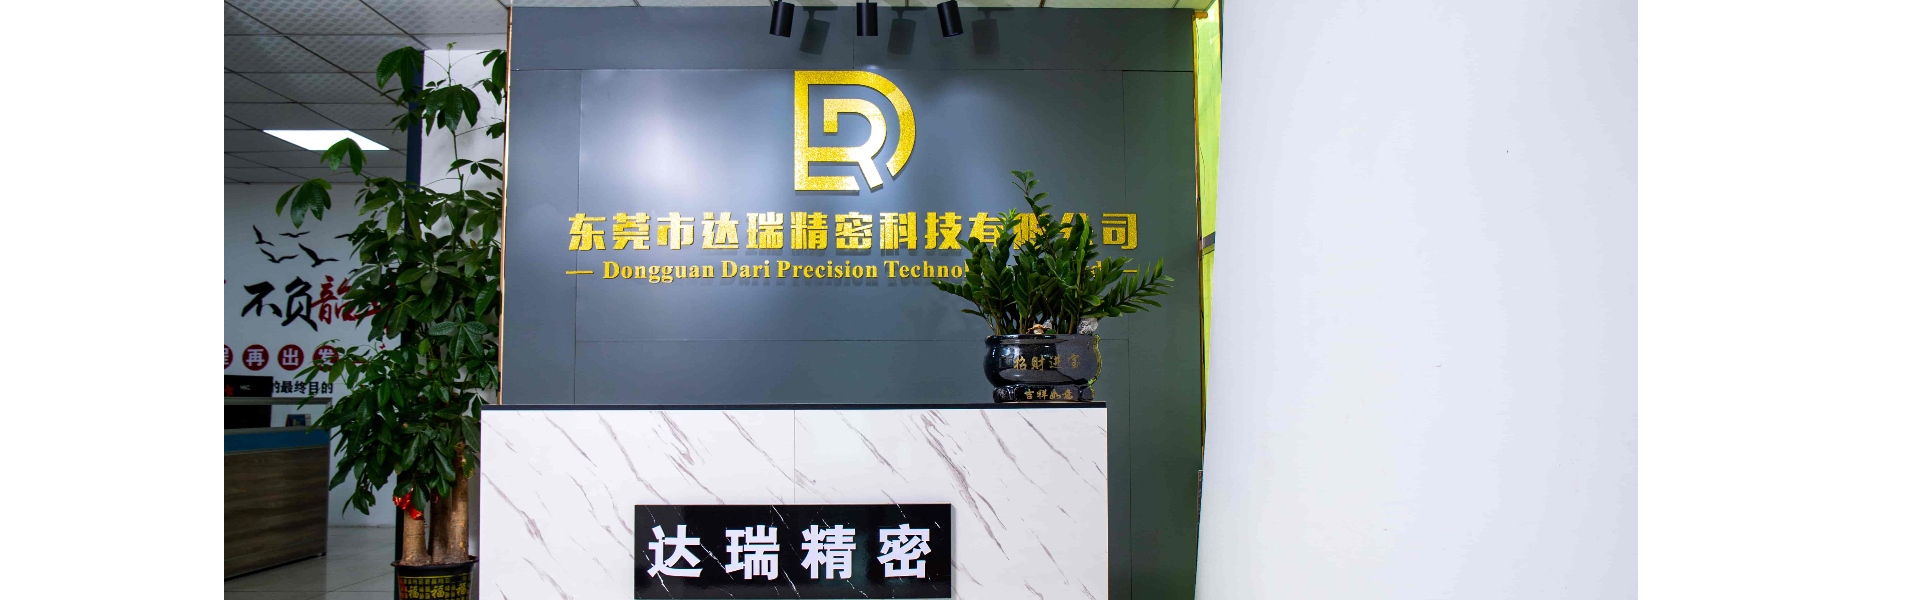 Πλαστικό καλούπι, χύτευση με έγχυση, πλαστικό κέλυφος,Dongguan Darui Precision Technology Co., Ltd.